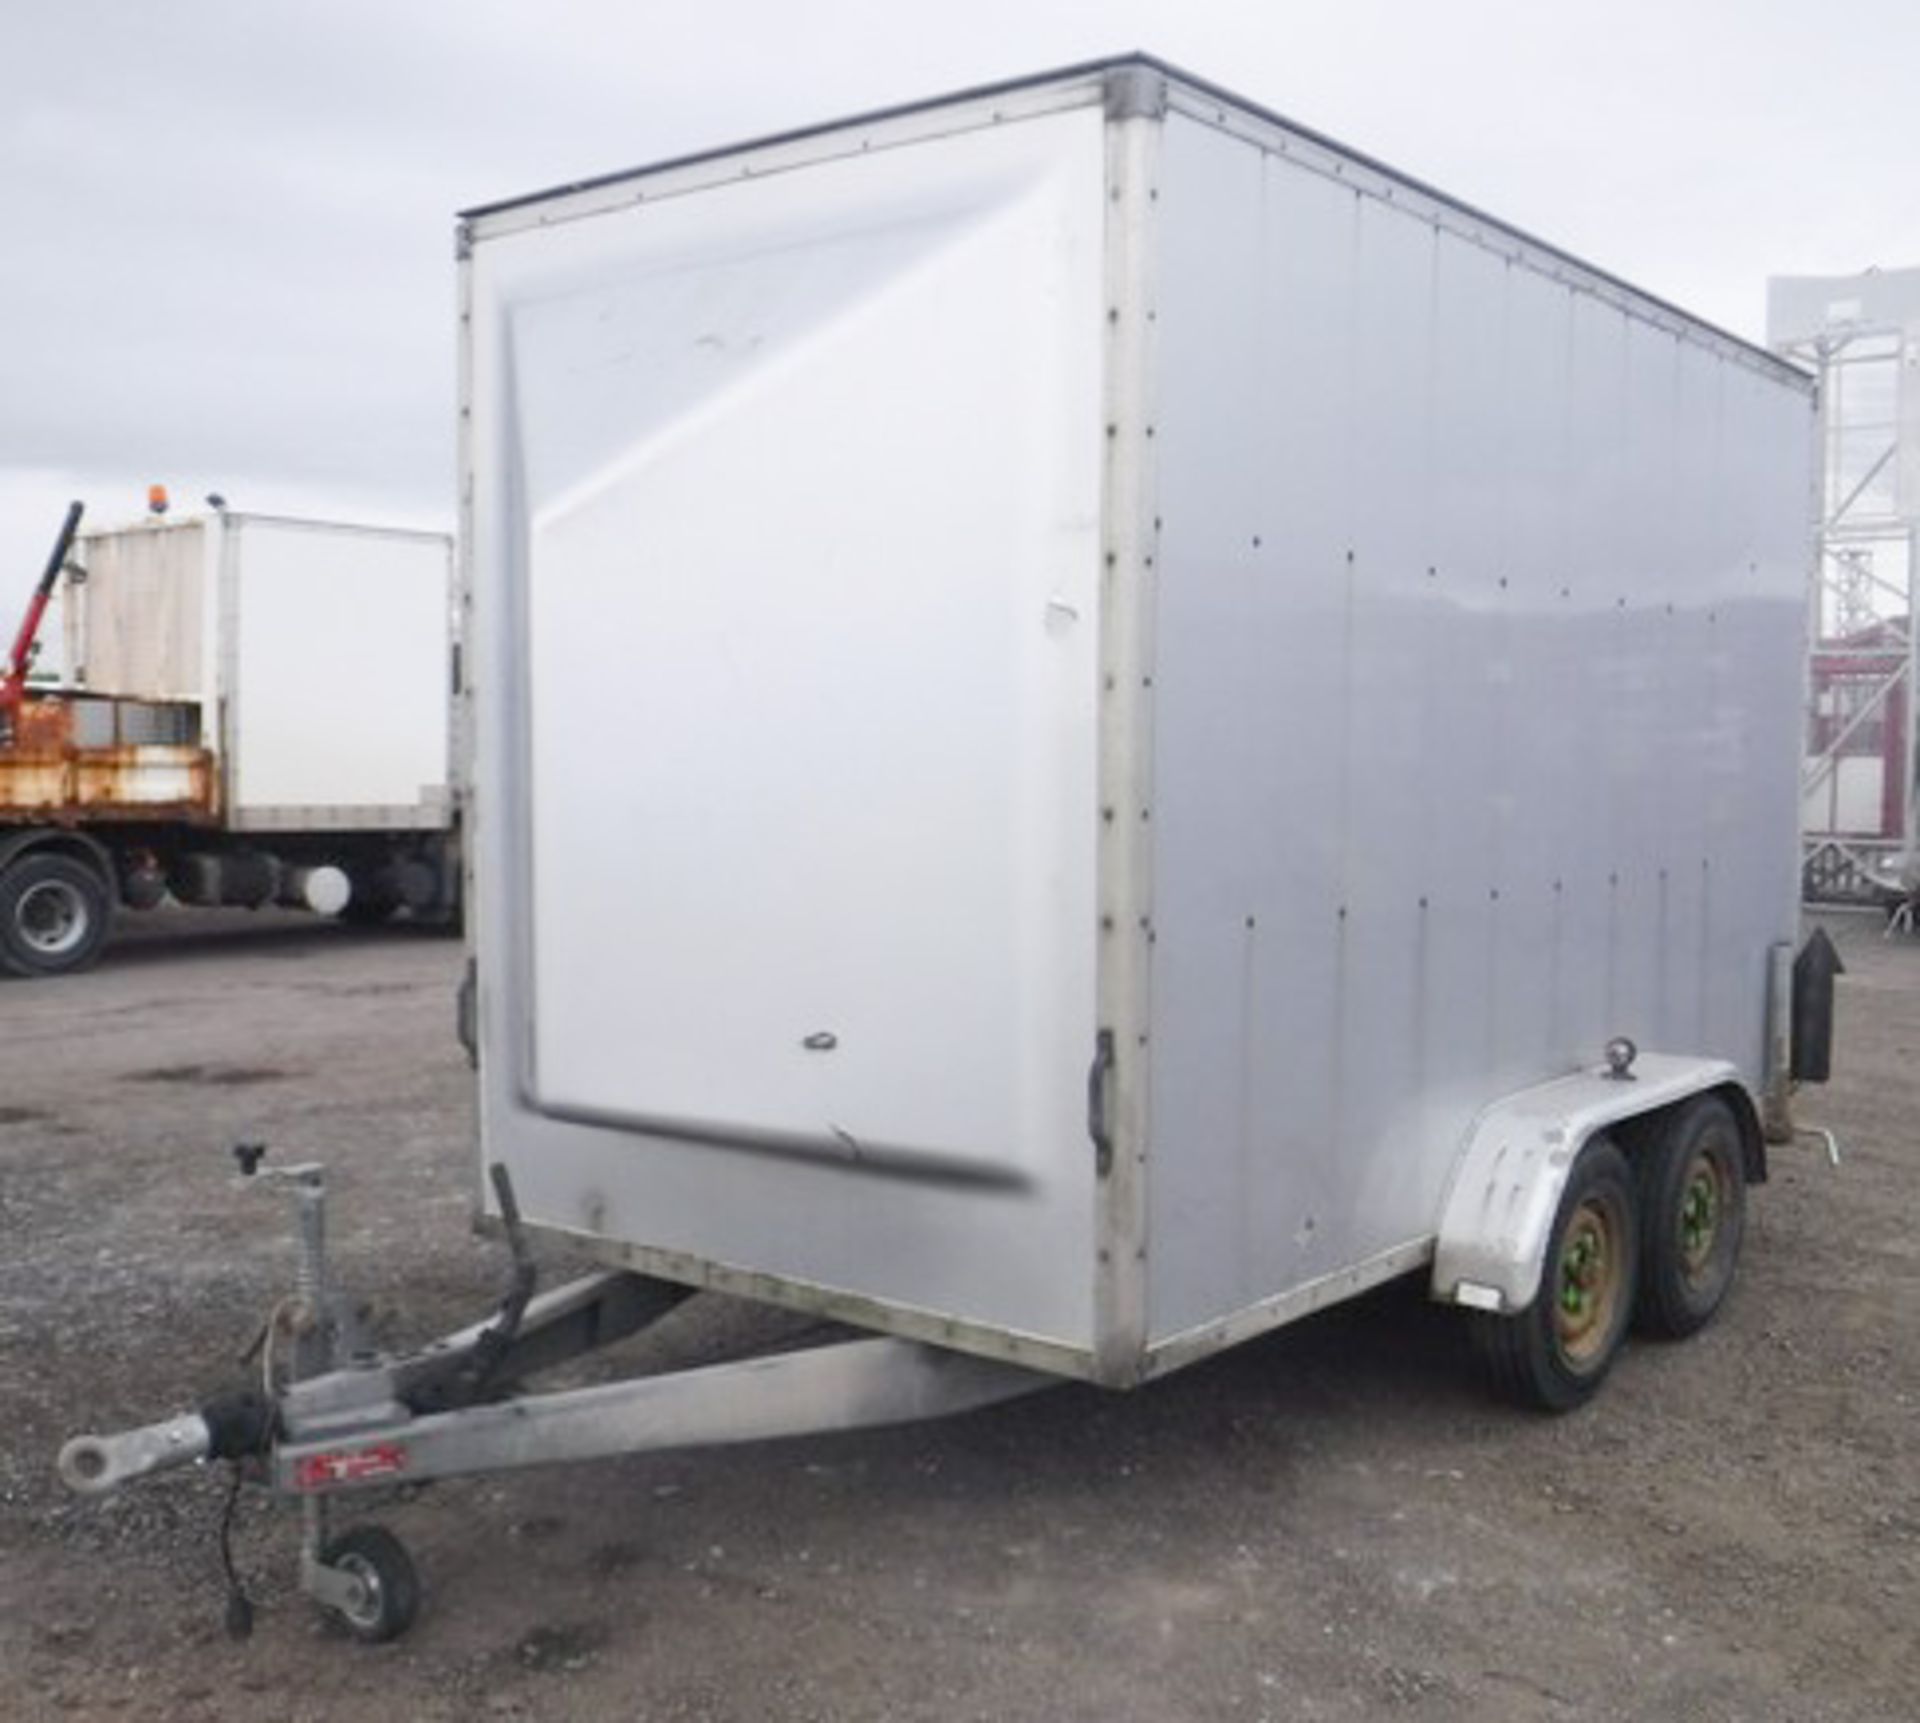 INDESPENSION box trailer. VIN - SDHS80DS G053933. H - 7ft, L - 12ft, W - 6ft. Asset - 758-1308